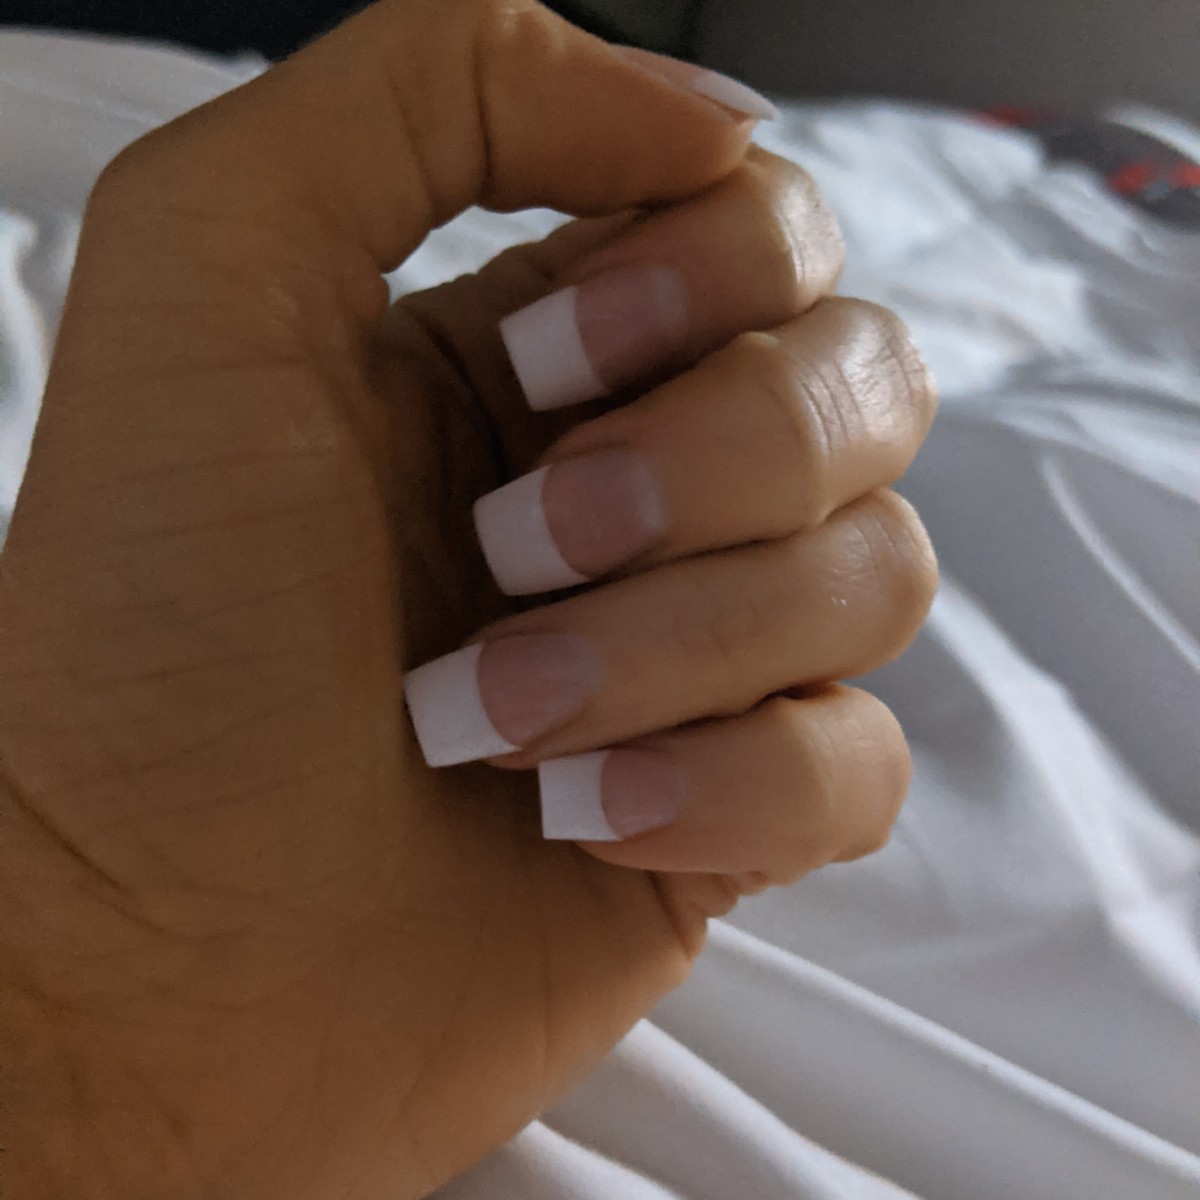 Miztress Sophie Shox nails manicure